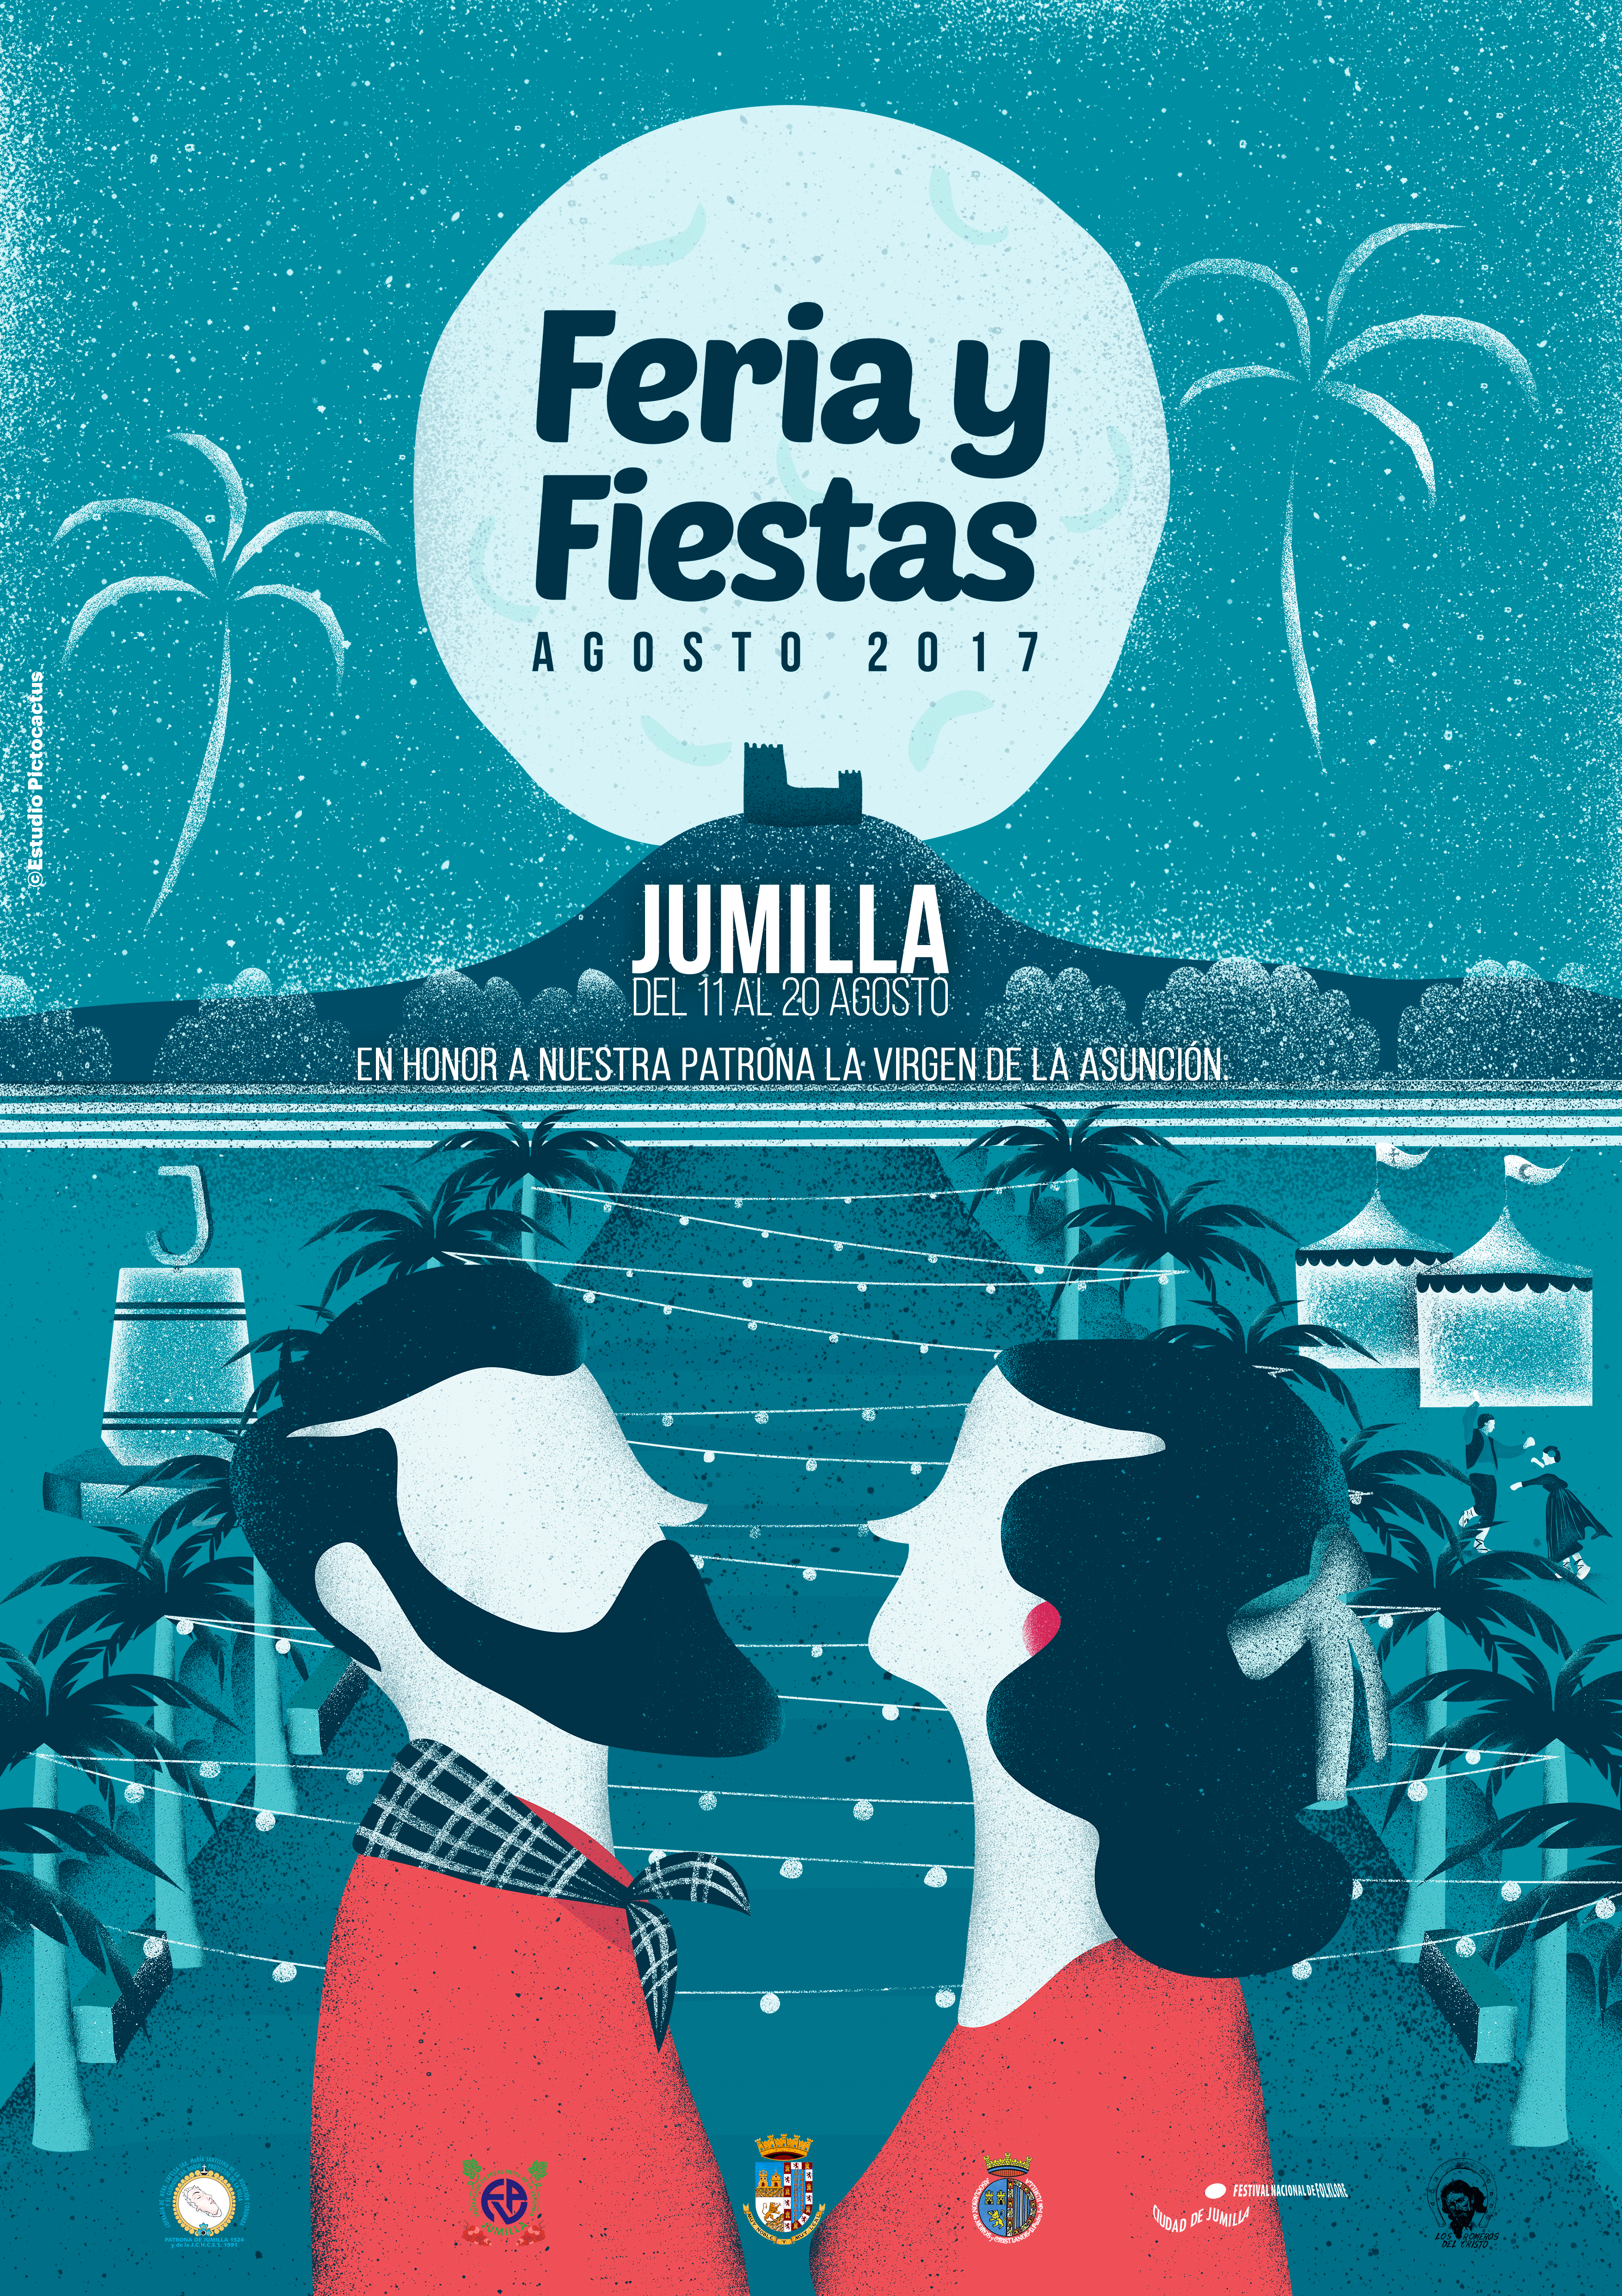 “Aires renovados y una imagen sencilla”, para el cartel de Feria y Fiestas de agosto 2017